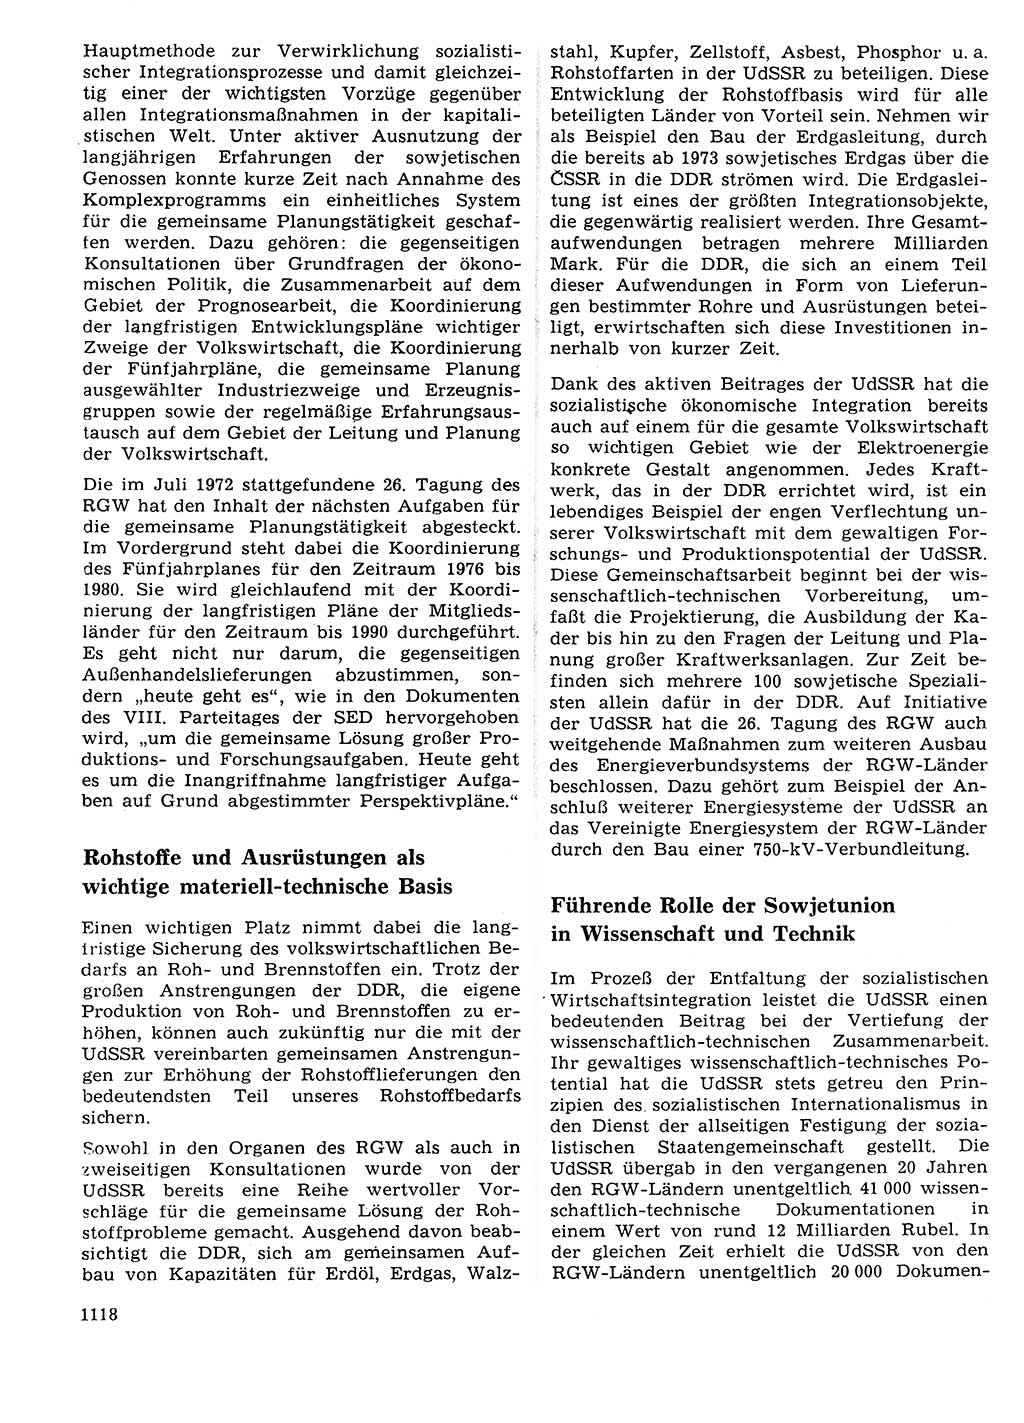 Neuer Weg (NW), Organ des Zentralkomitees (ZK) der SED (Sozialistische Einheitspartei Deutschlands) für Fragen des Parteilebens, 27. Jahrgang [Deutsche Demokratische Republik (DDR)] 1972, Seite 1118 (NW ZK SED DDR 1972, S. 1118)